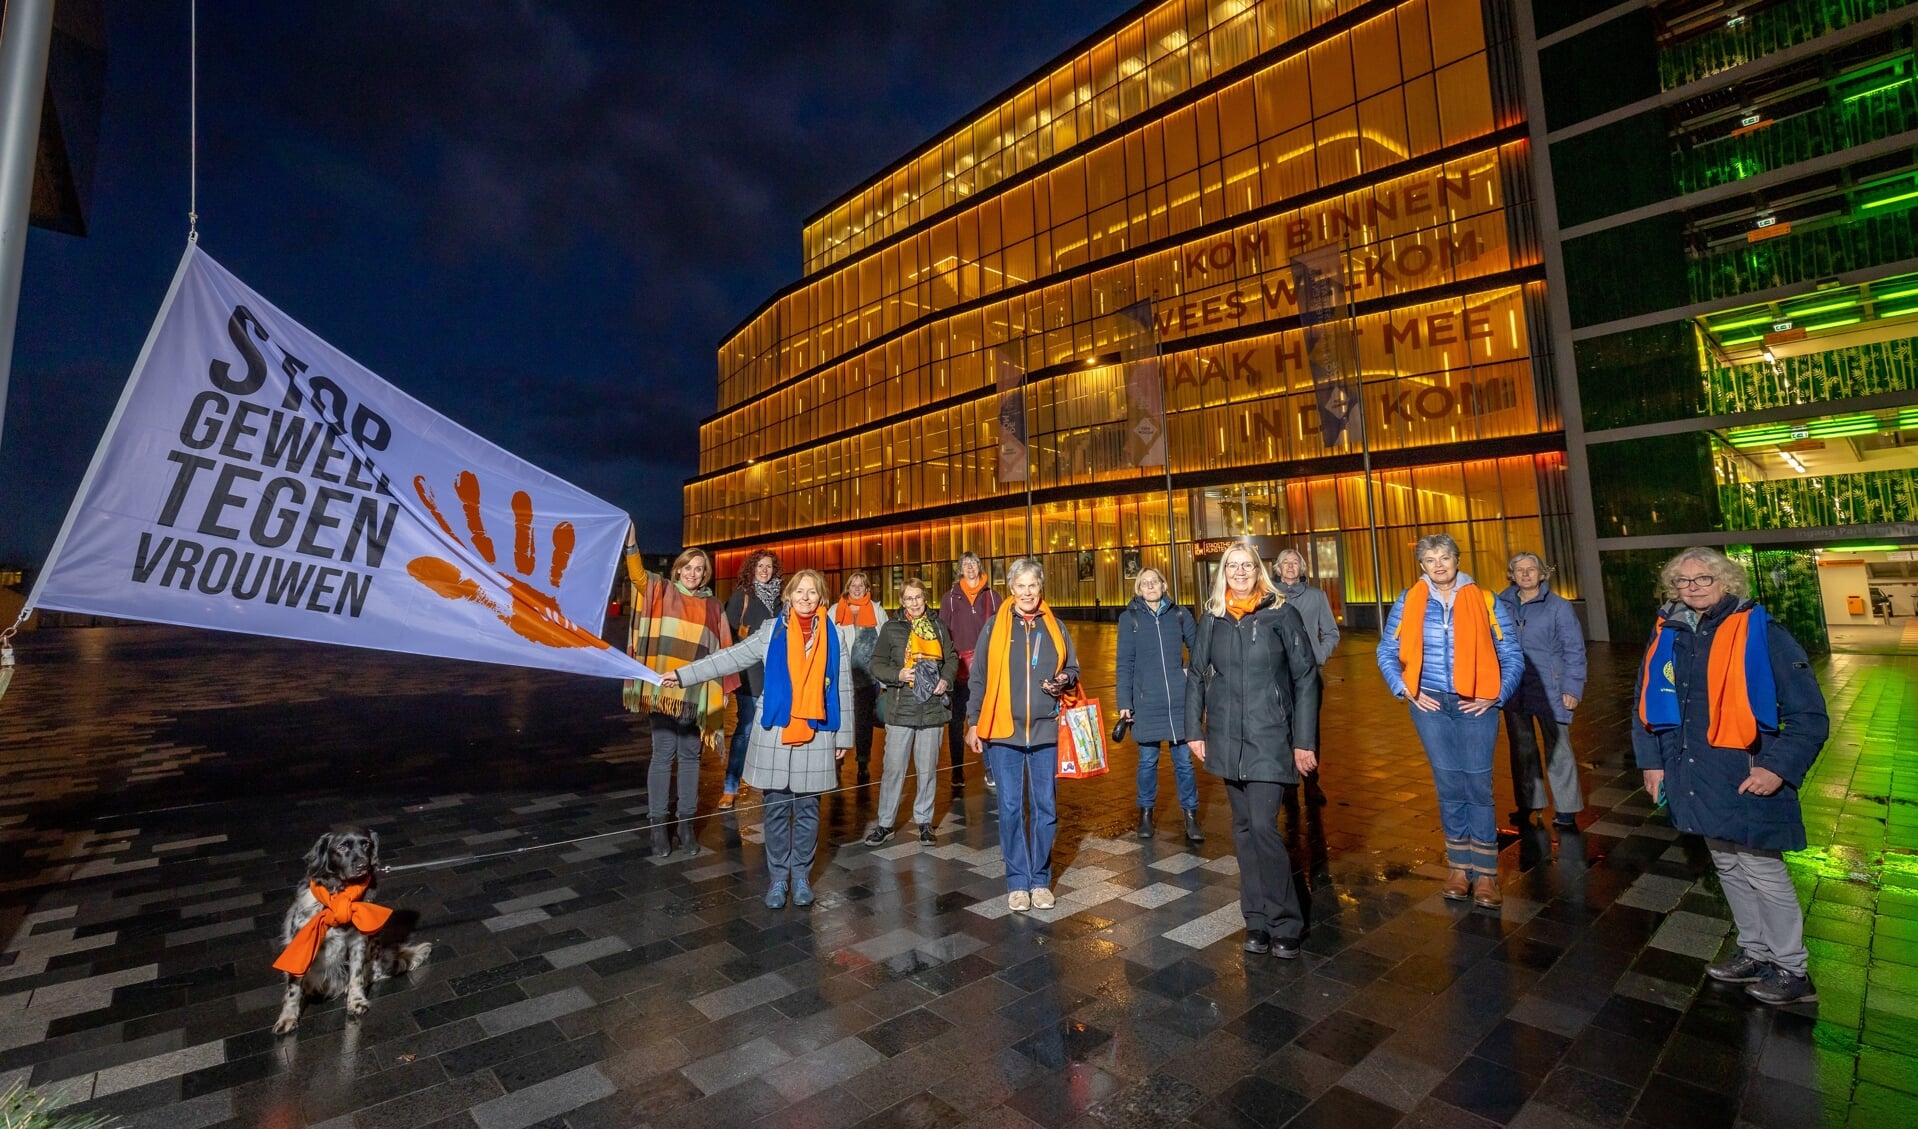 Nieuwegeinse wethouders hijsen de vlag tijdens 'Orange the World' in 2021.